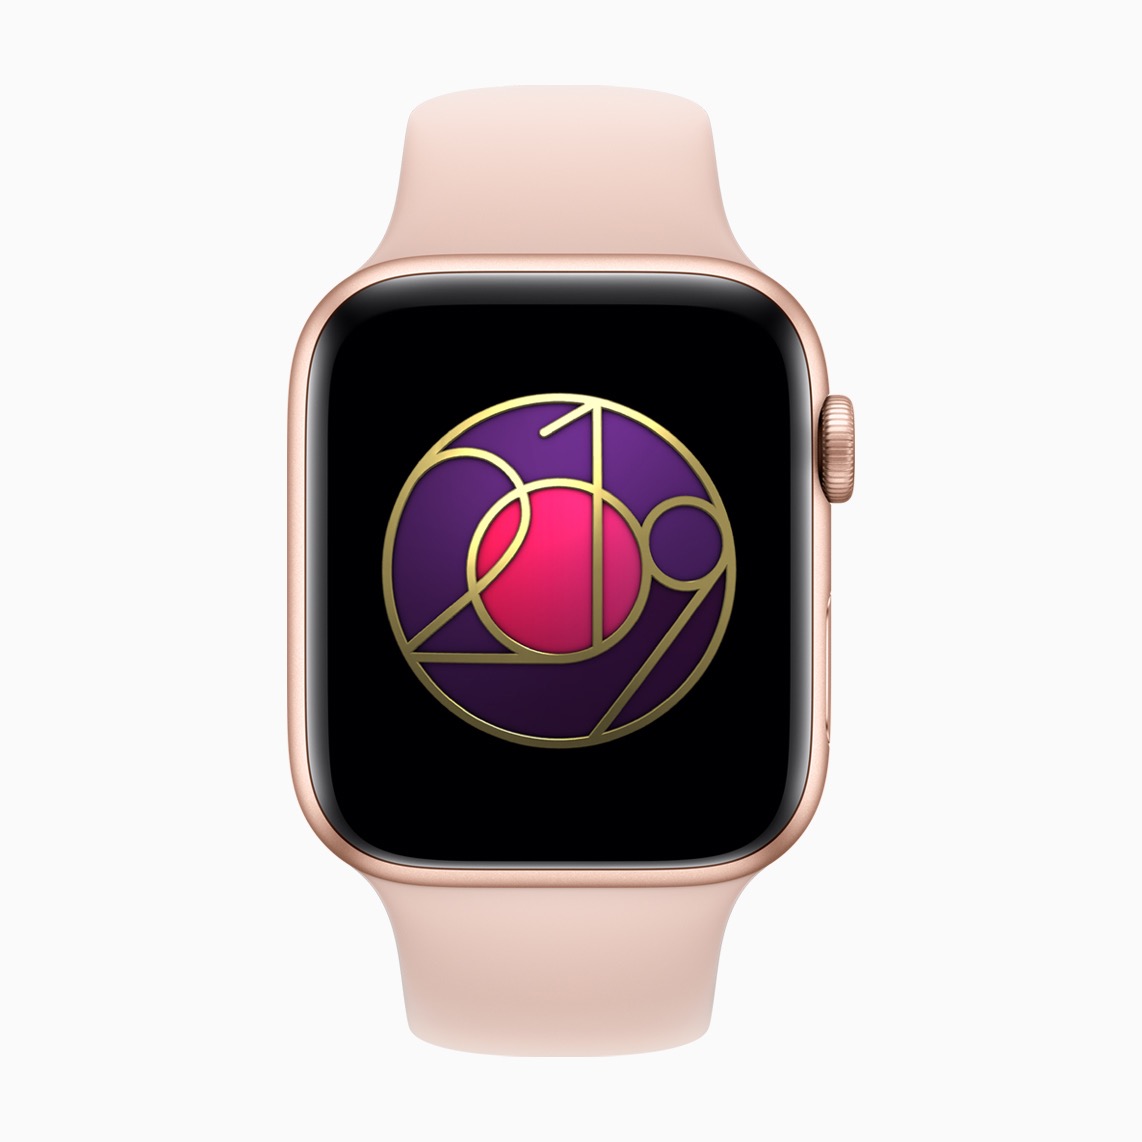 【本日限定】｢Apple Watch｣のチャレンジ企画『国際女性デーチャレンジ』が開催中